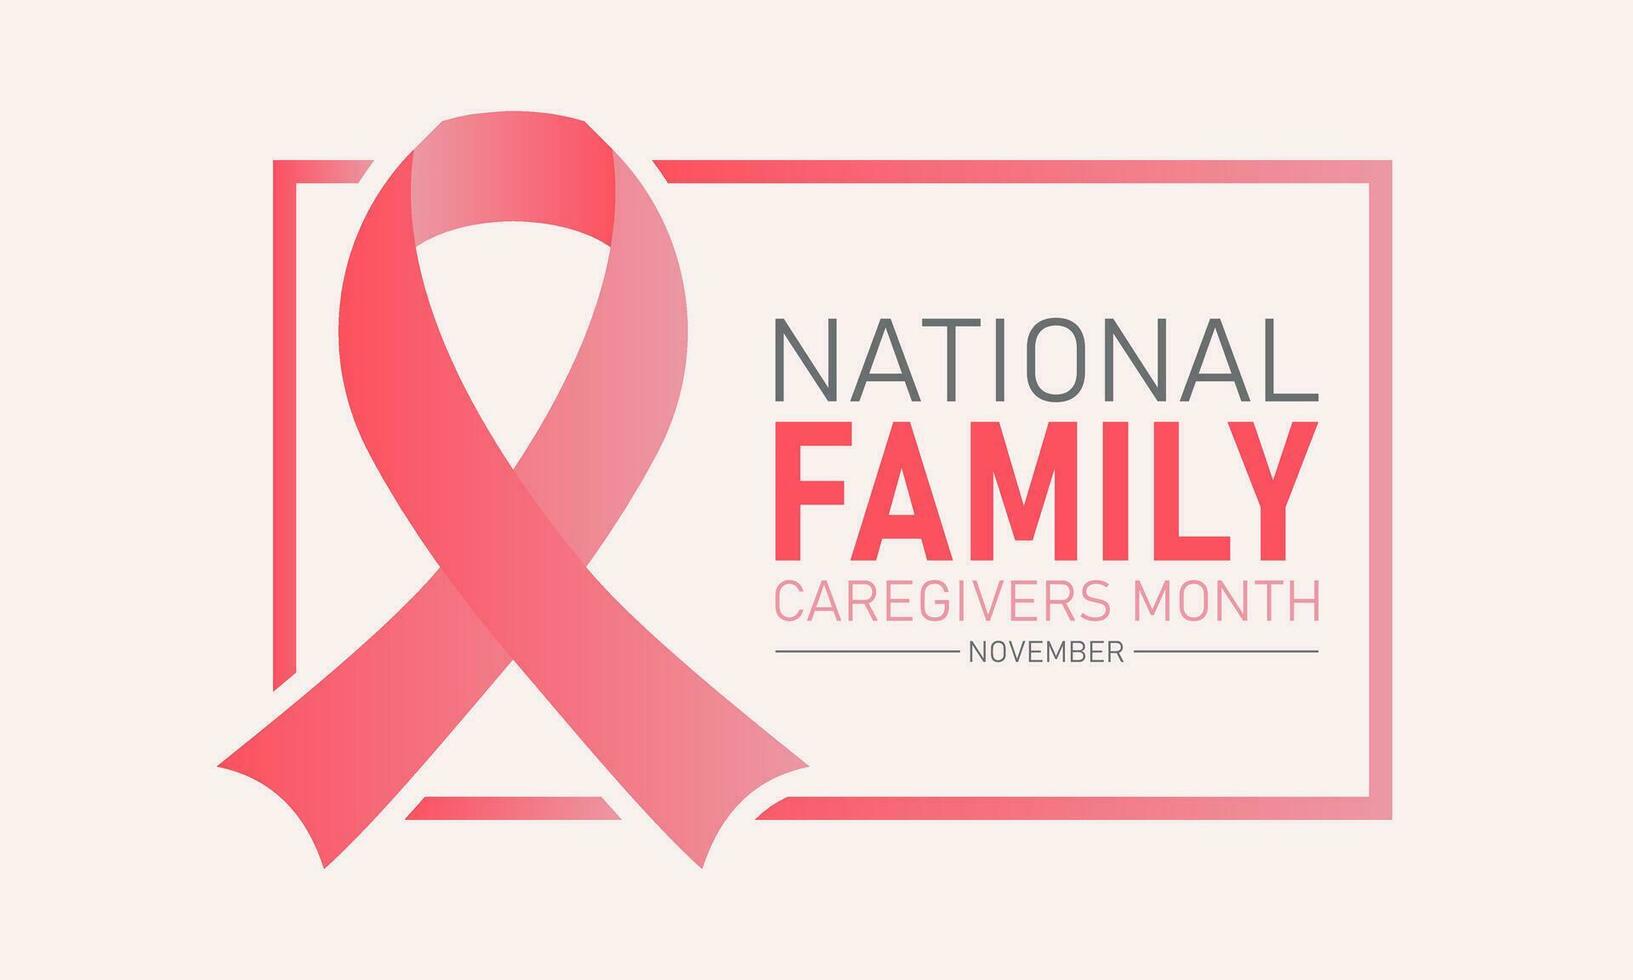 nationell familj vårdgivare månad är observerats varje år i november. november är nationell familj vårdgivare månad. vektor mall för baner, hälsning kort, affisch med bakgrund.